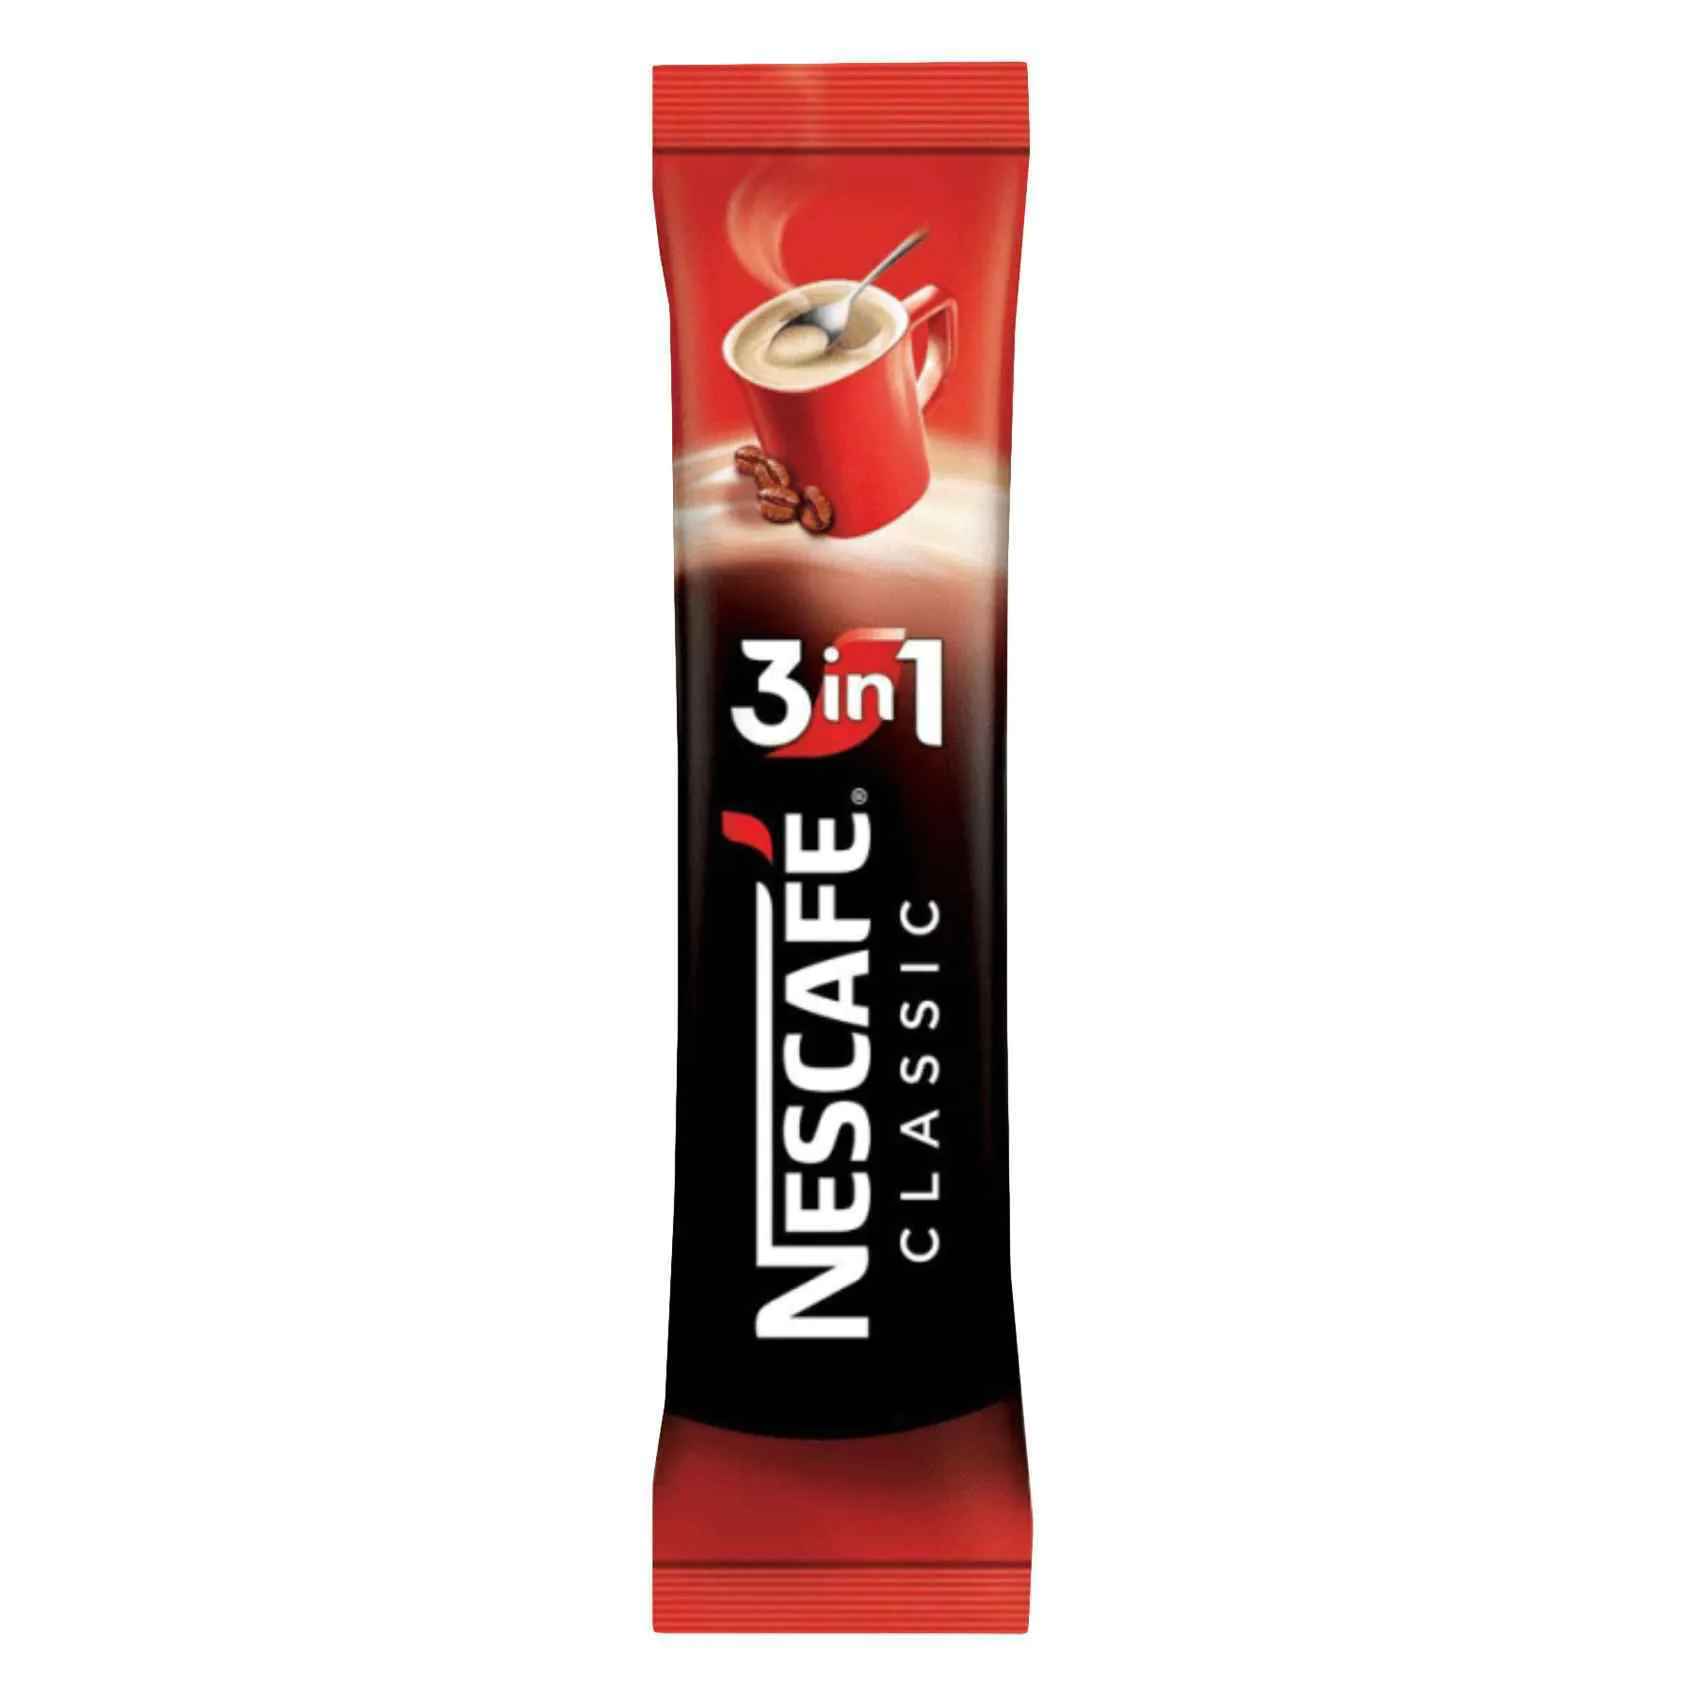 Buy Nescafe 3 In 1 Coffee 17 Gm